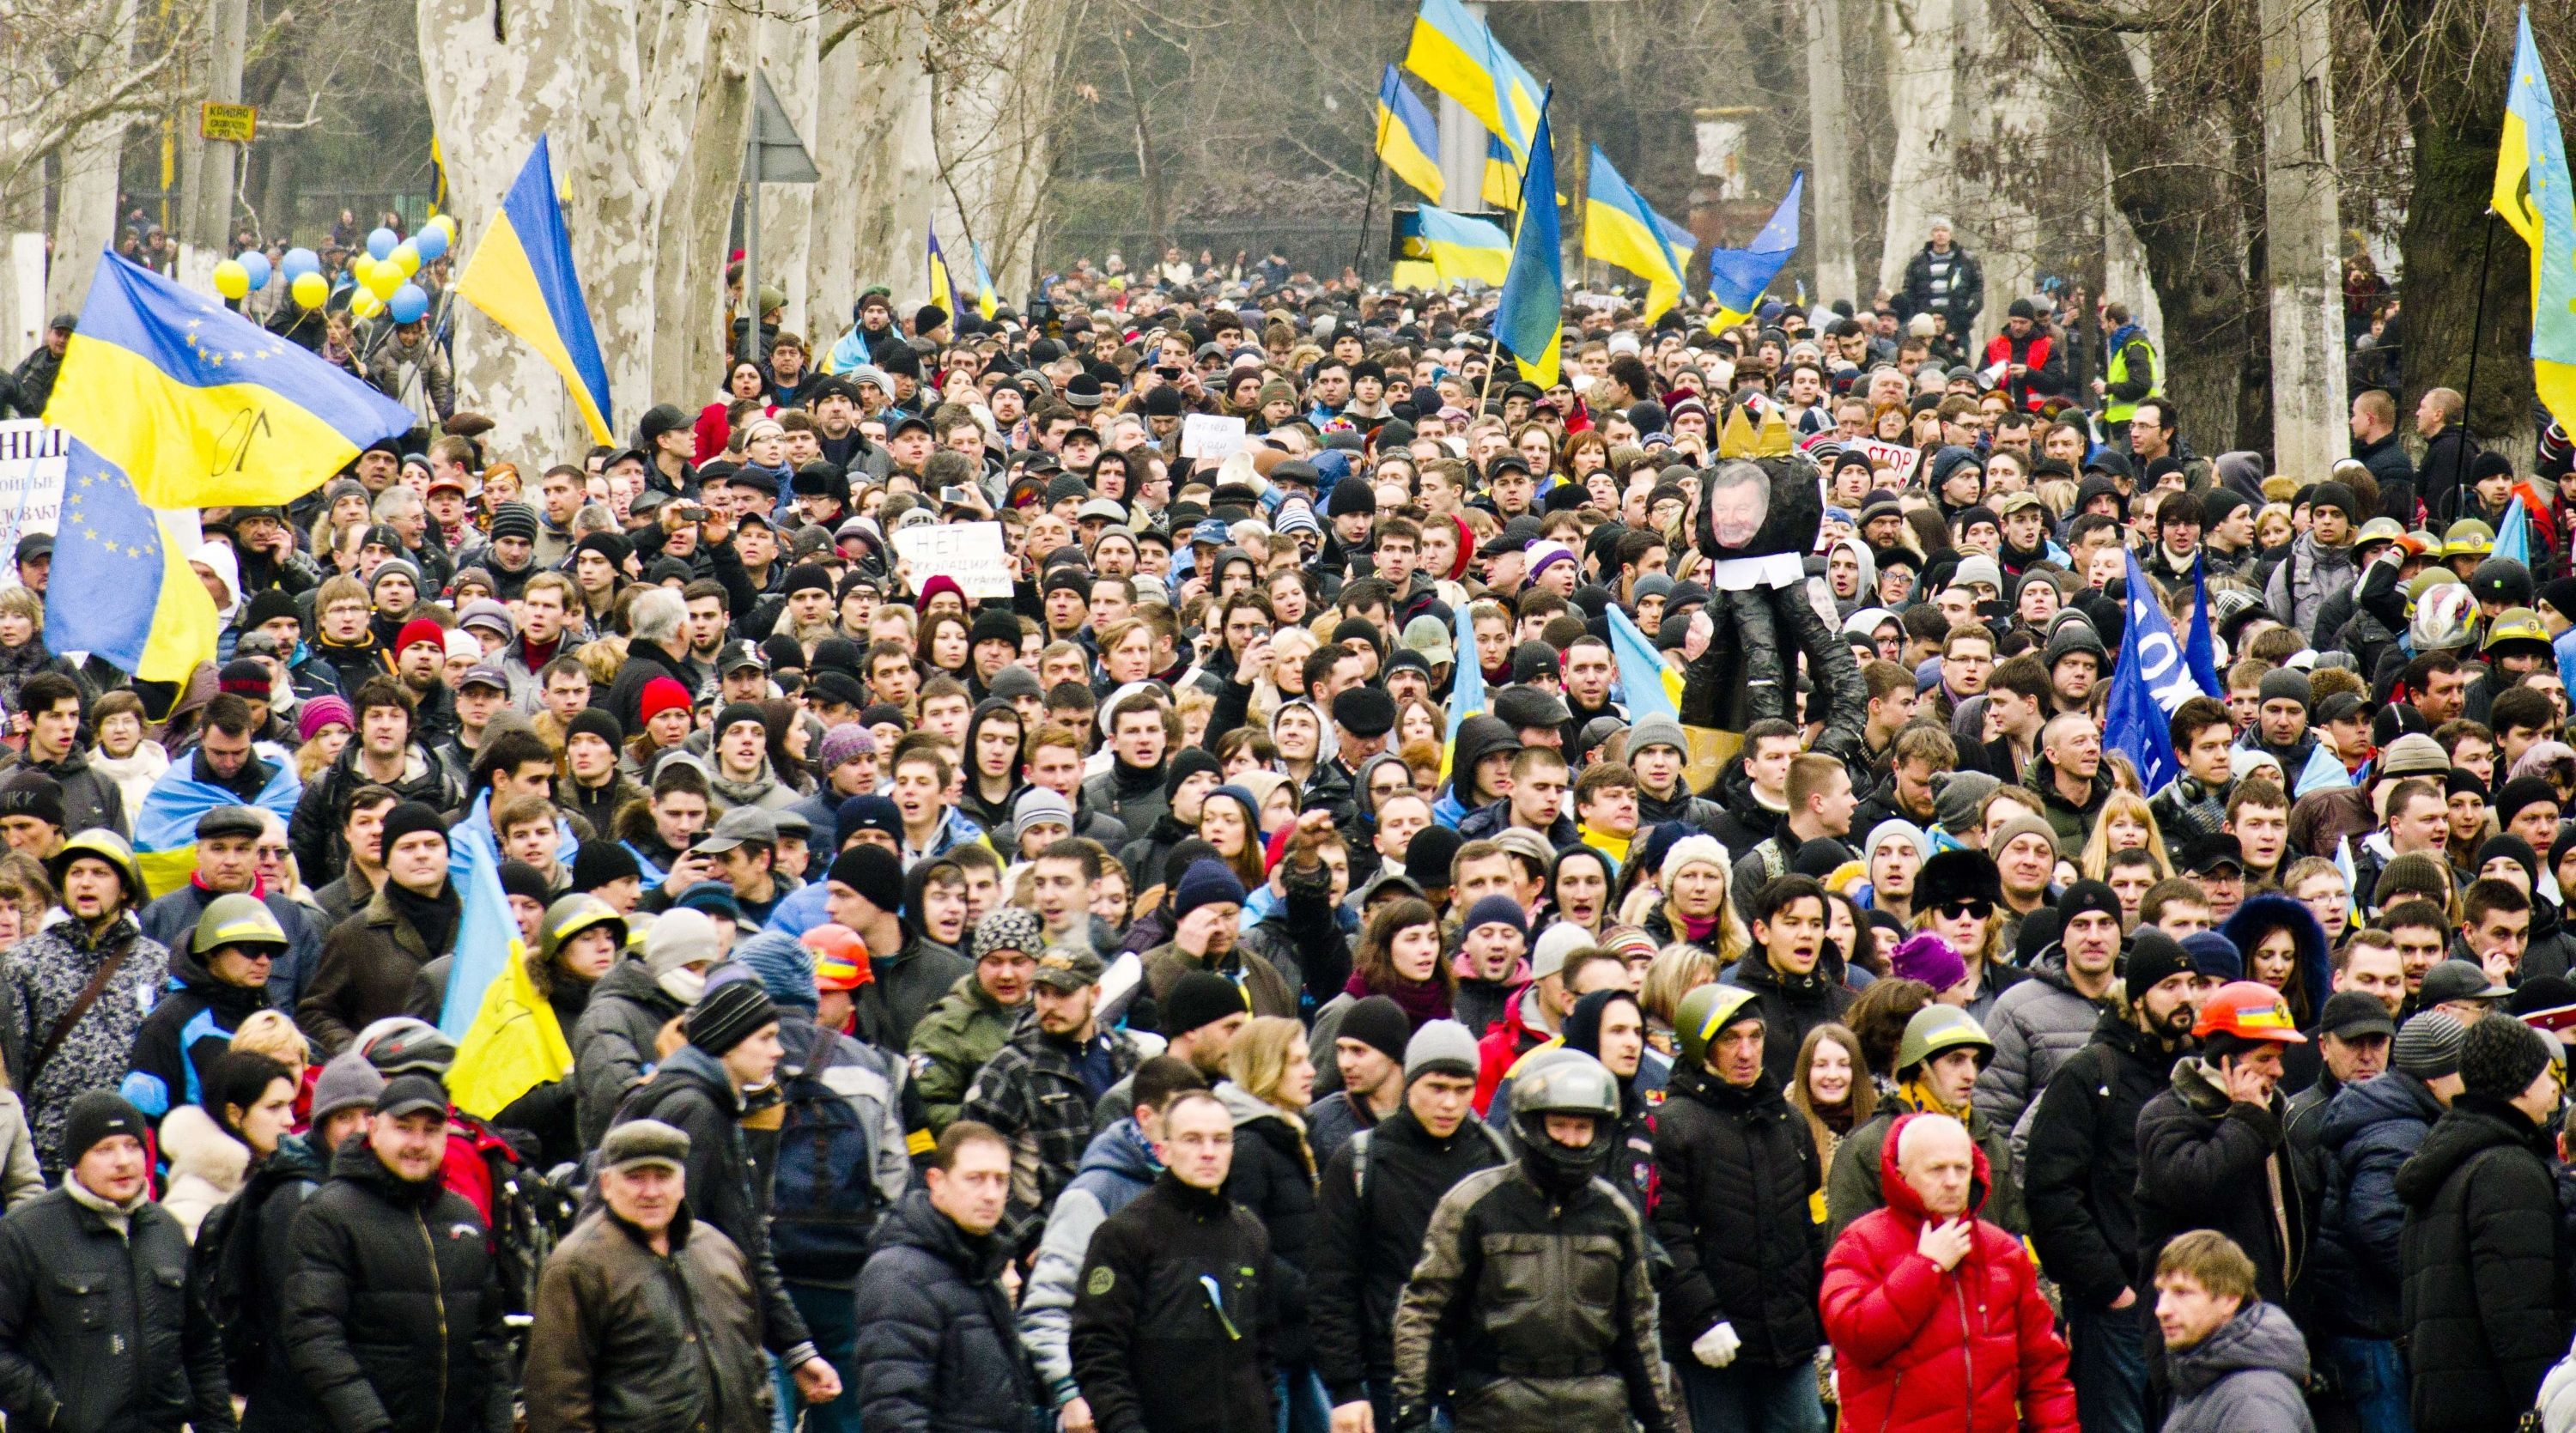 Говорять соціологічні дослідження: 10 висновків про справжні настрої в Україні у 2017 році